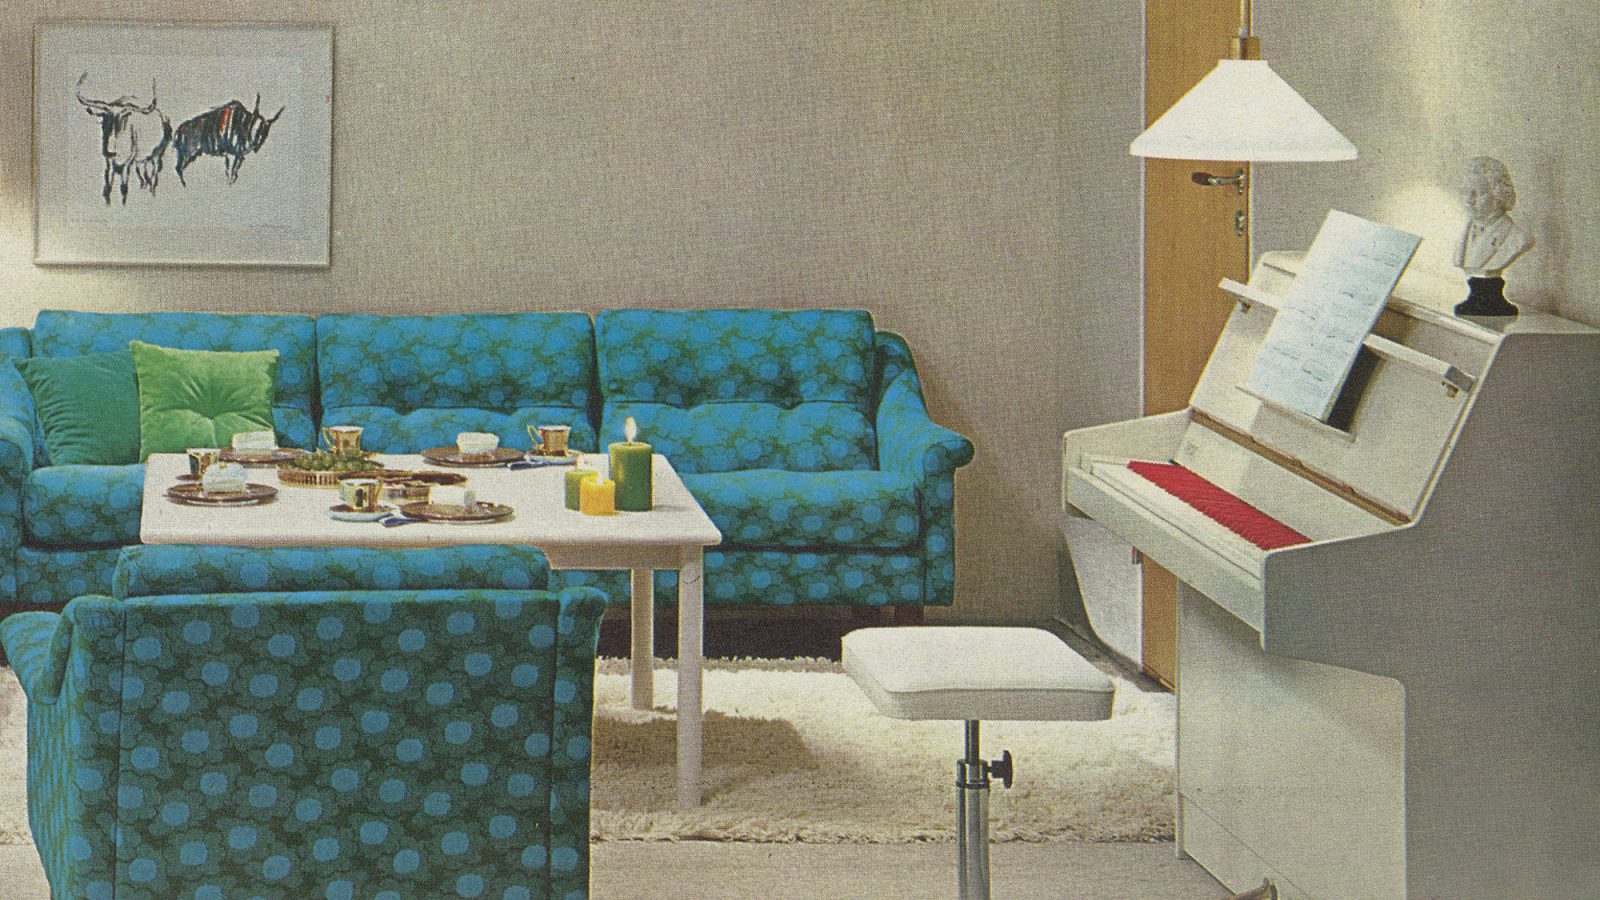 1970-talsinteriör med grön-turkos soffa, vit ryamatta och vitt piano med röda och vita tangenter.